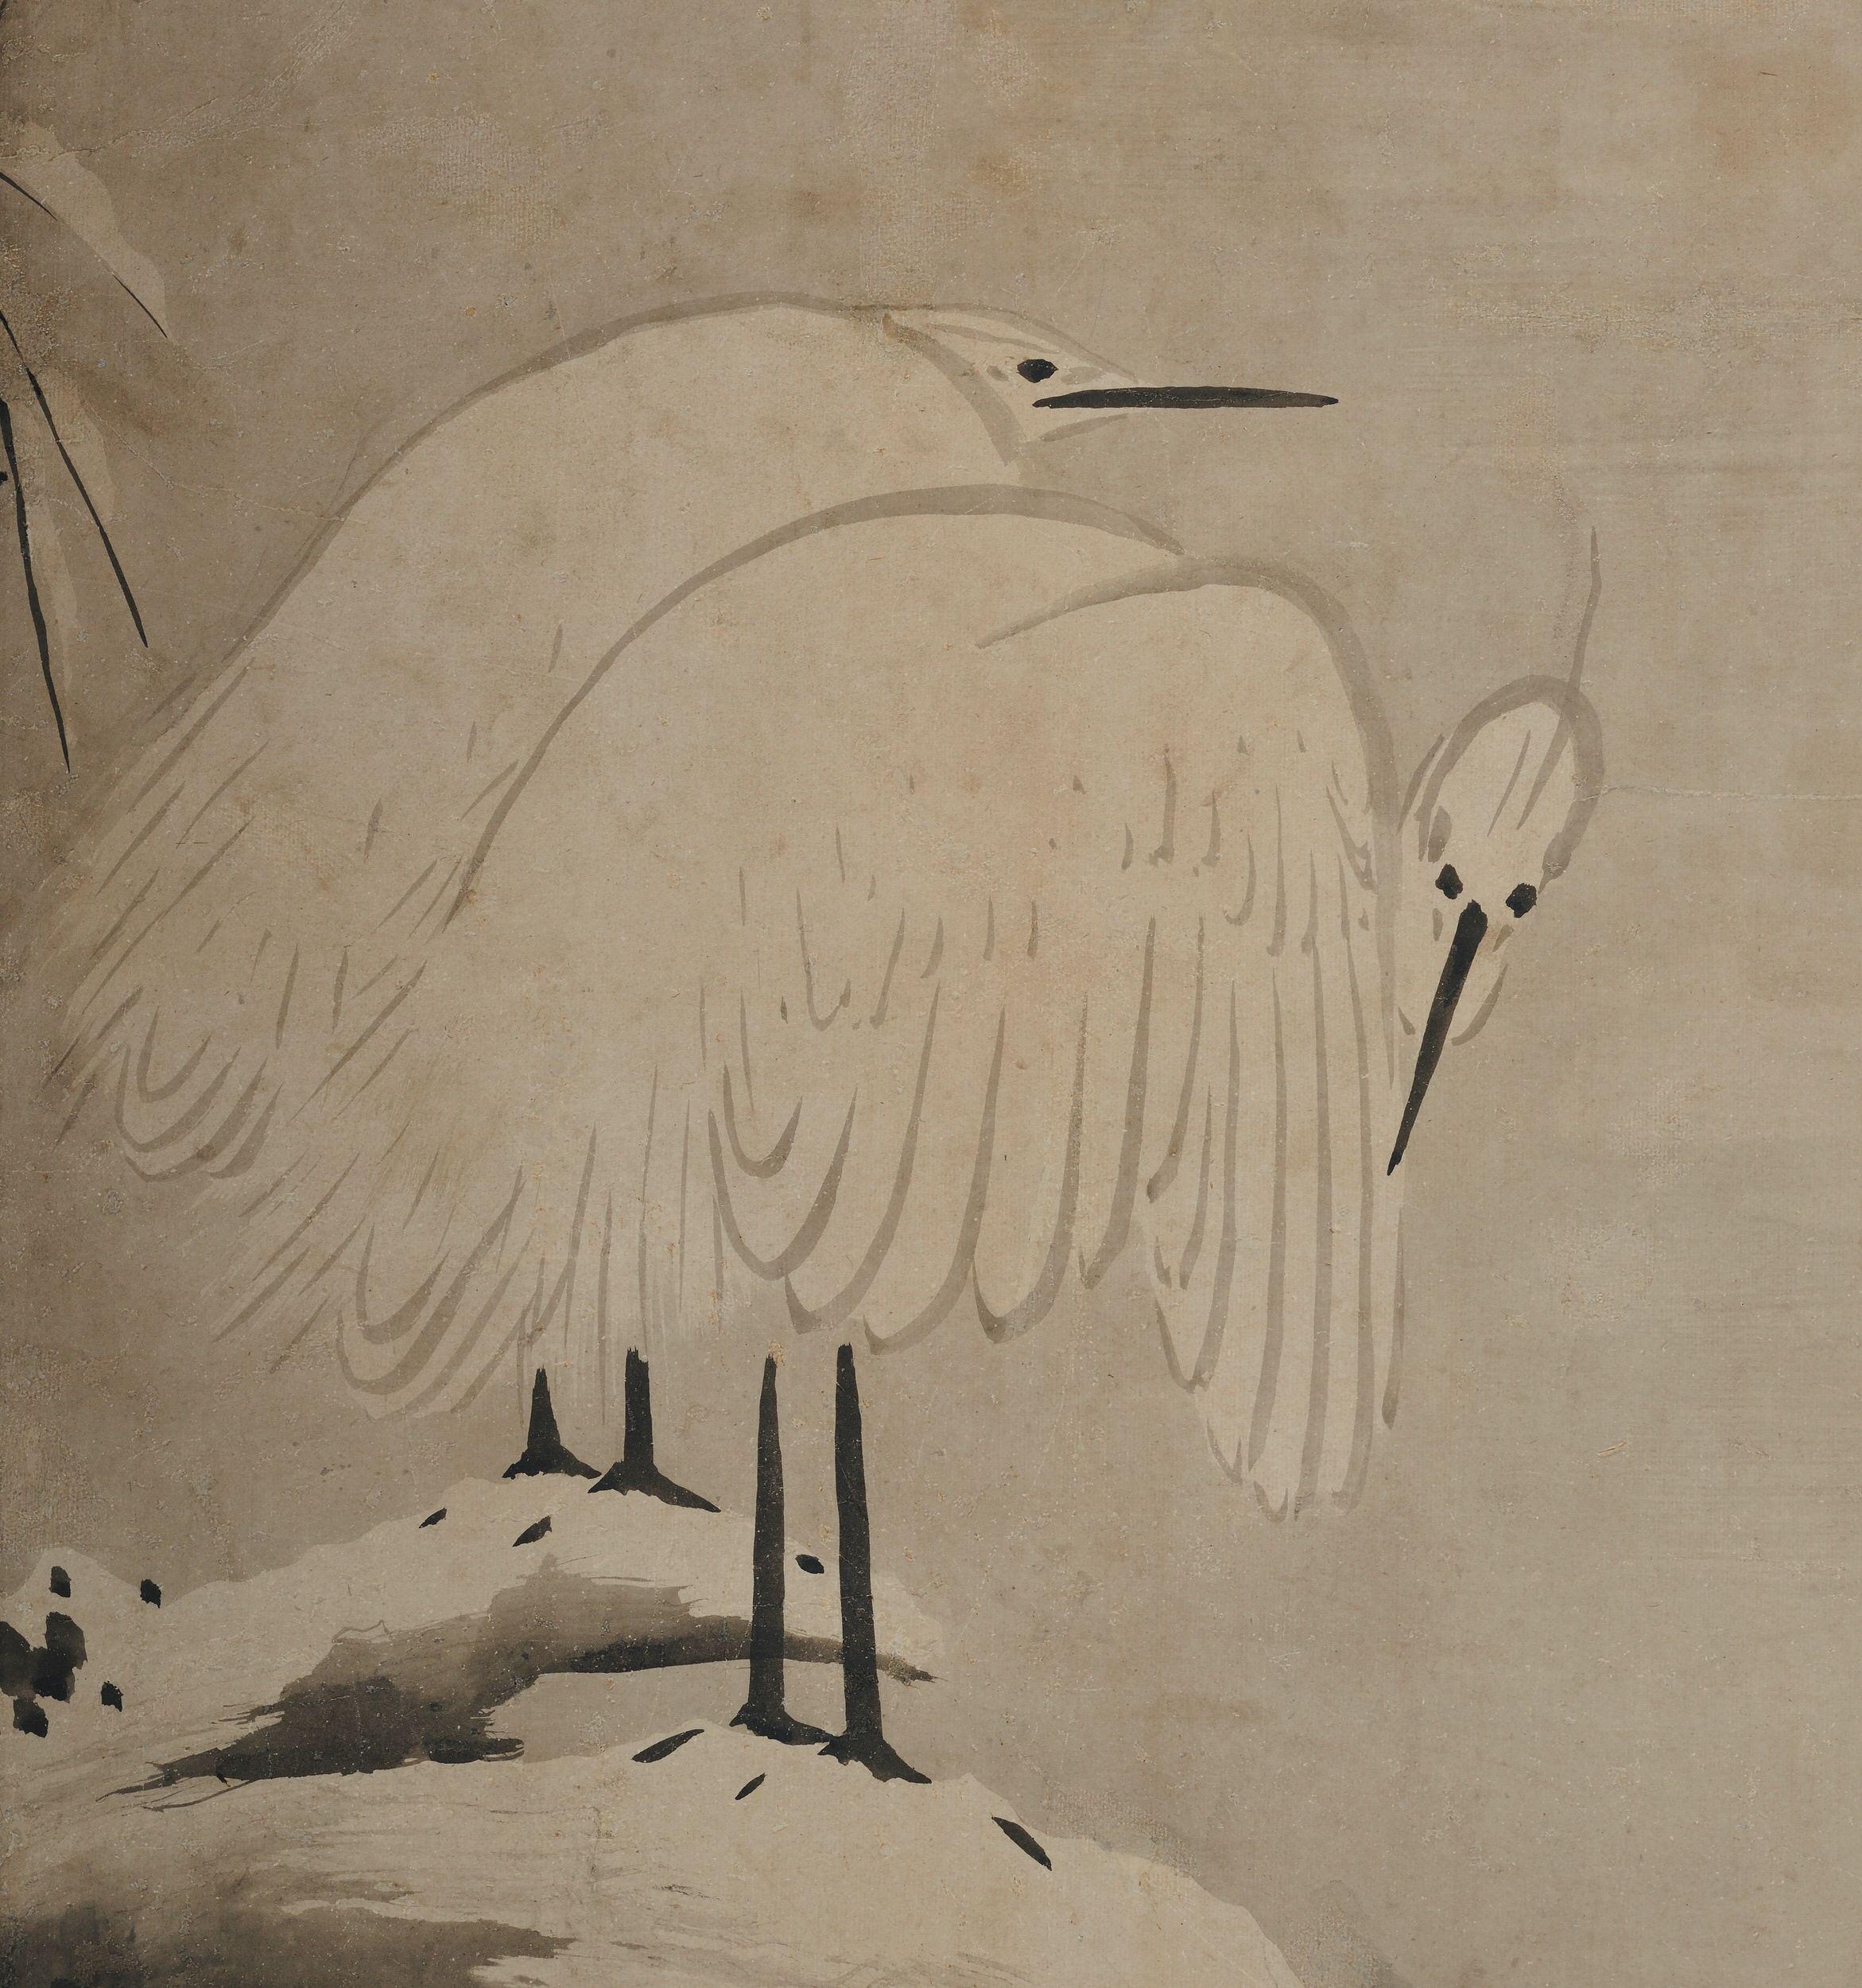 Kano Sansetsu (1589-1651)

Hérons blancs dans la neige

Période Edo, vers 1640

Peinture encadrée. Encre sur papier.

Kano Sansetsu est un peintre japonais qui a représenté l'école Kyo Kano (Kyoto Kano) de la fin du Momoyama au début de la